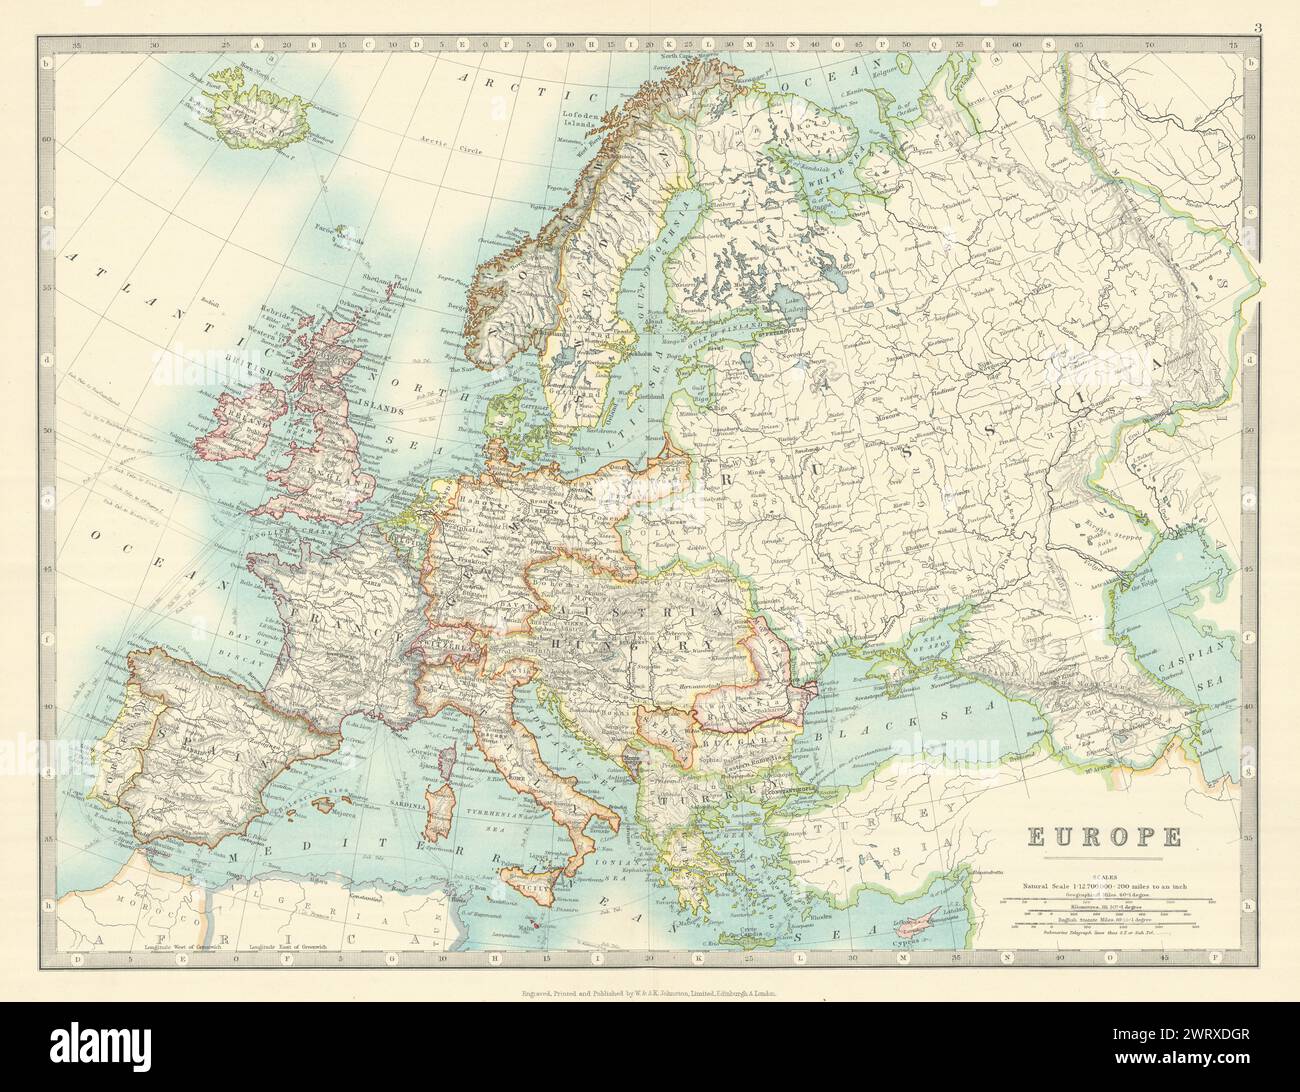 L’EUROPE montrée juste avant la première Guerre mondiale. JOHNSTON 1913 ancienne carte antique Banque D'Images